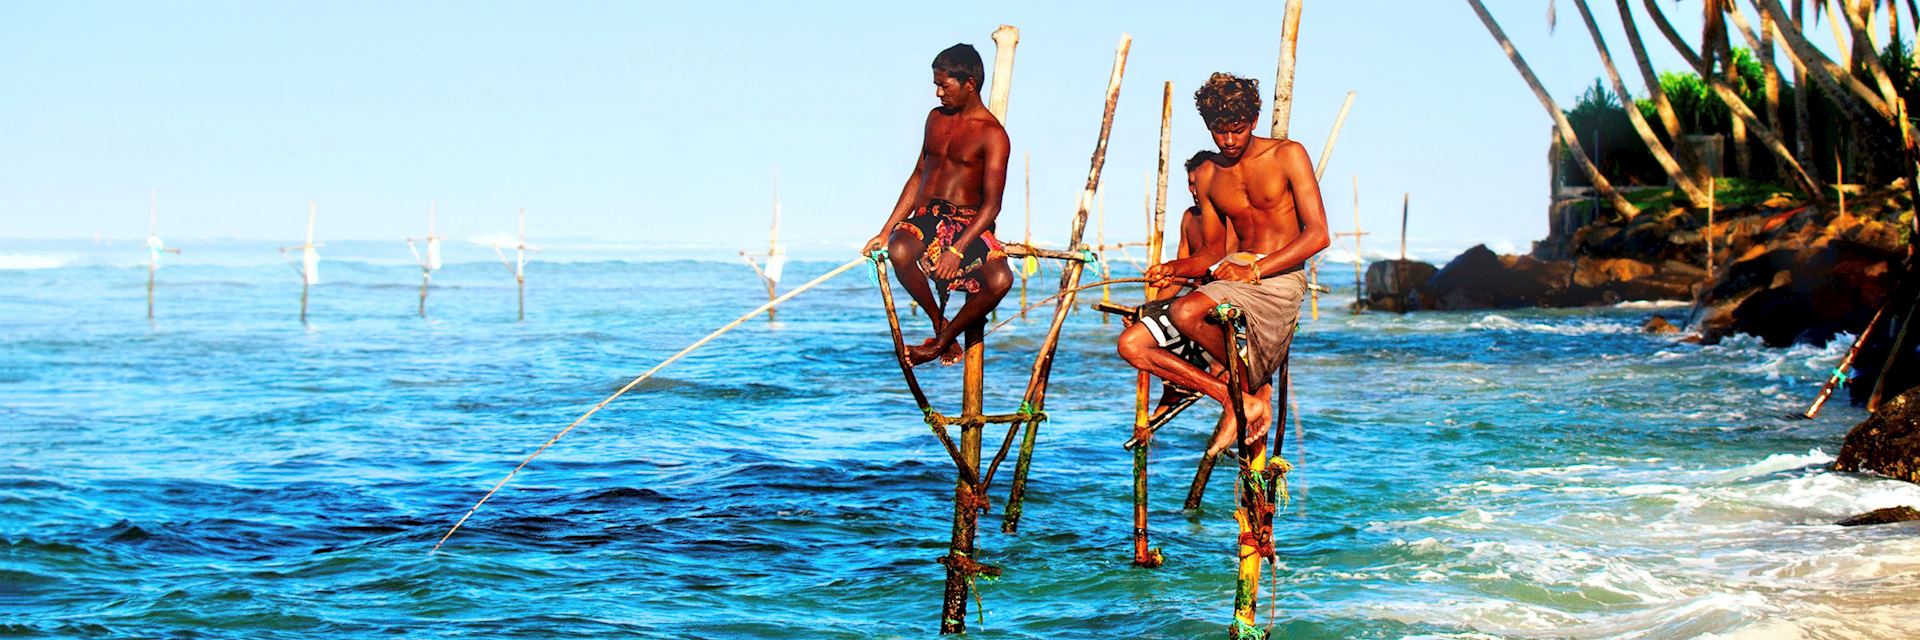 Stilt fishermen in Galle